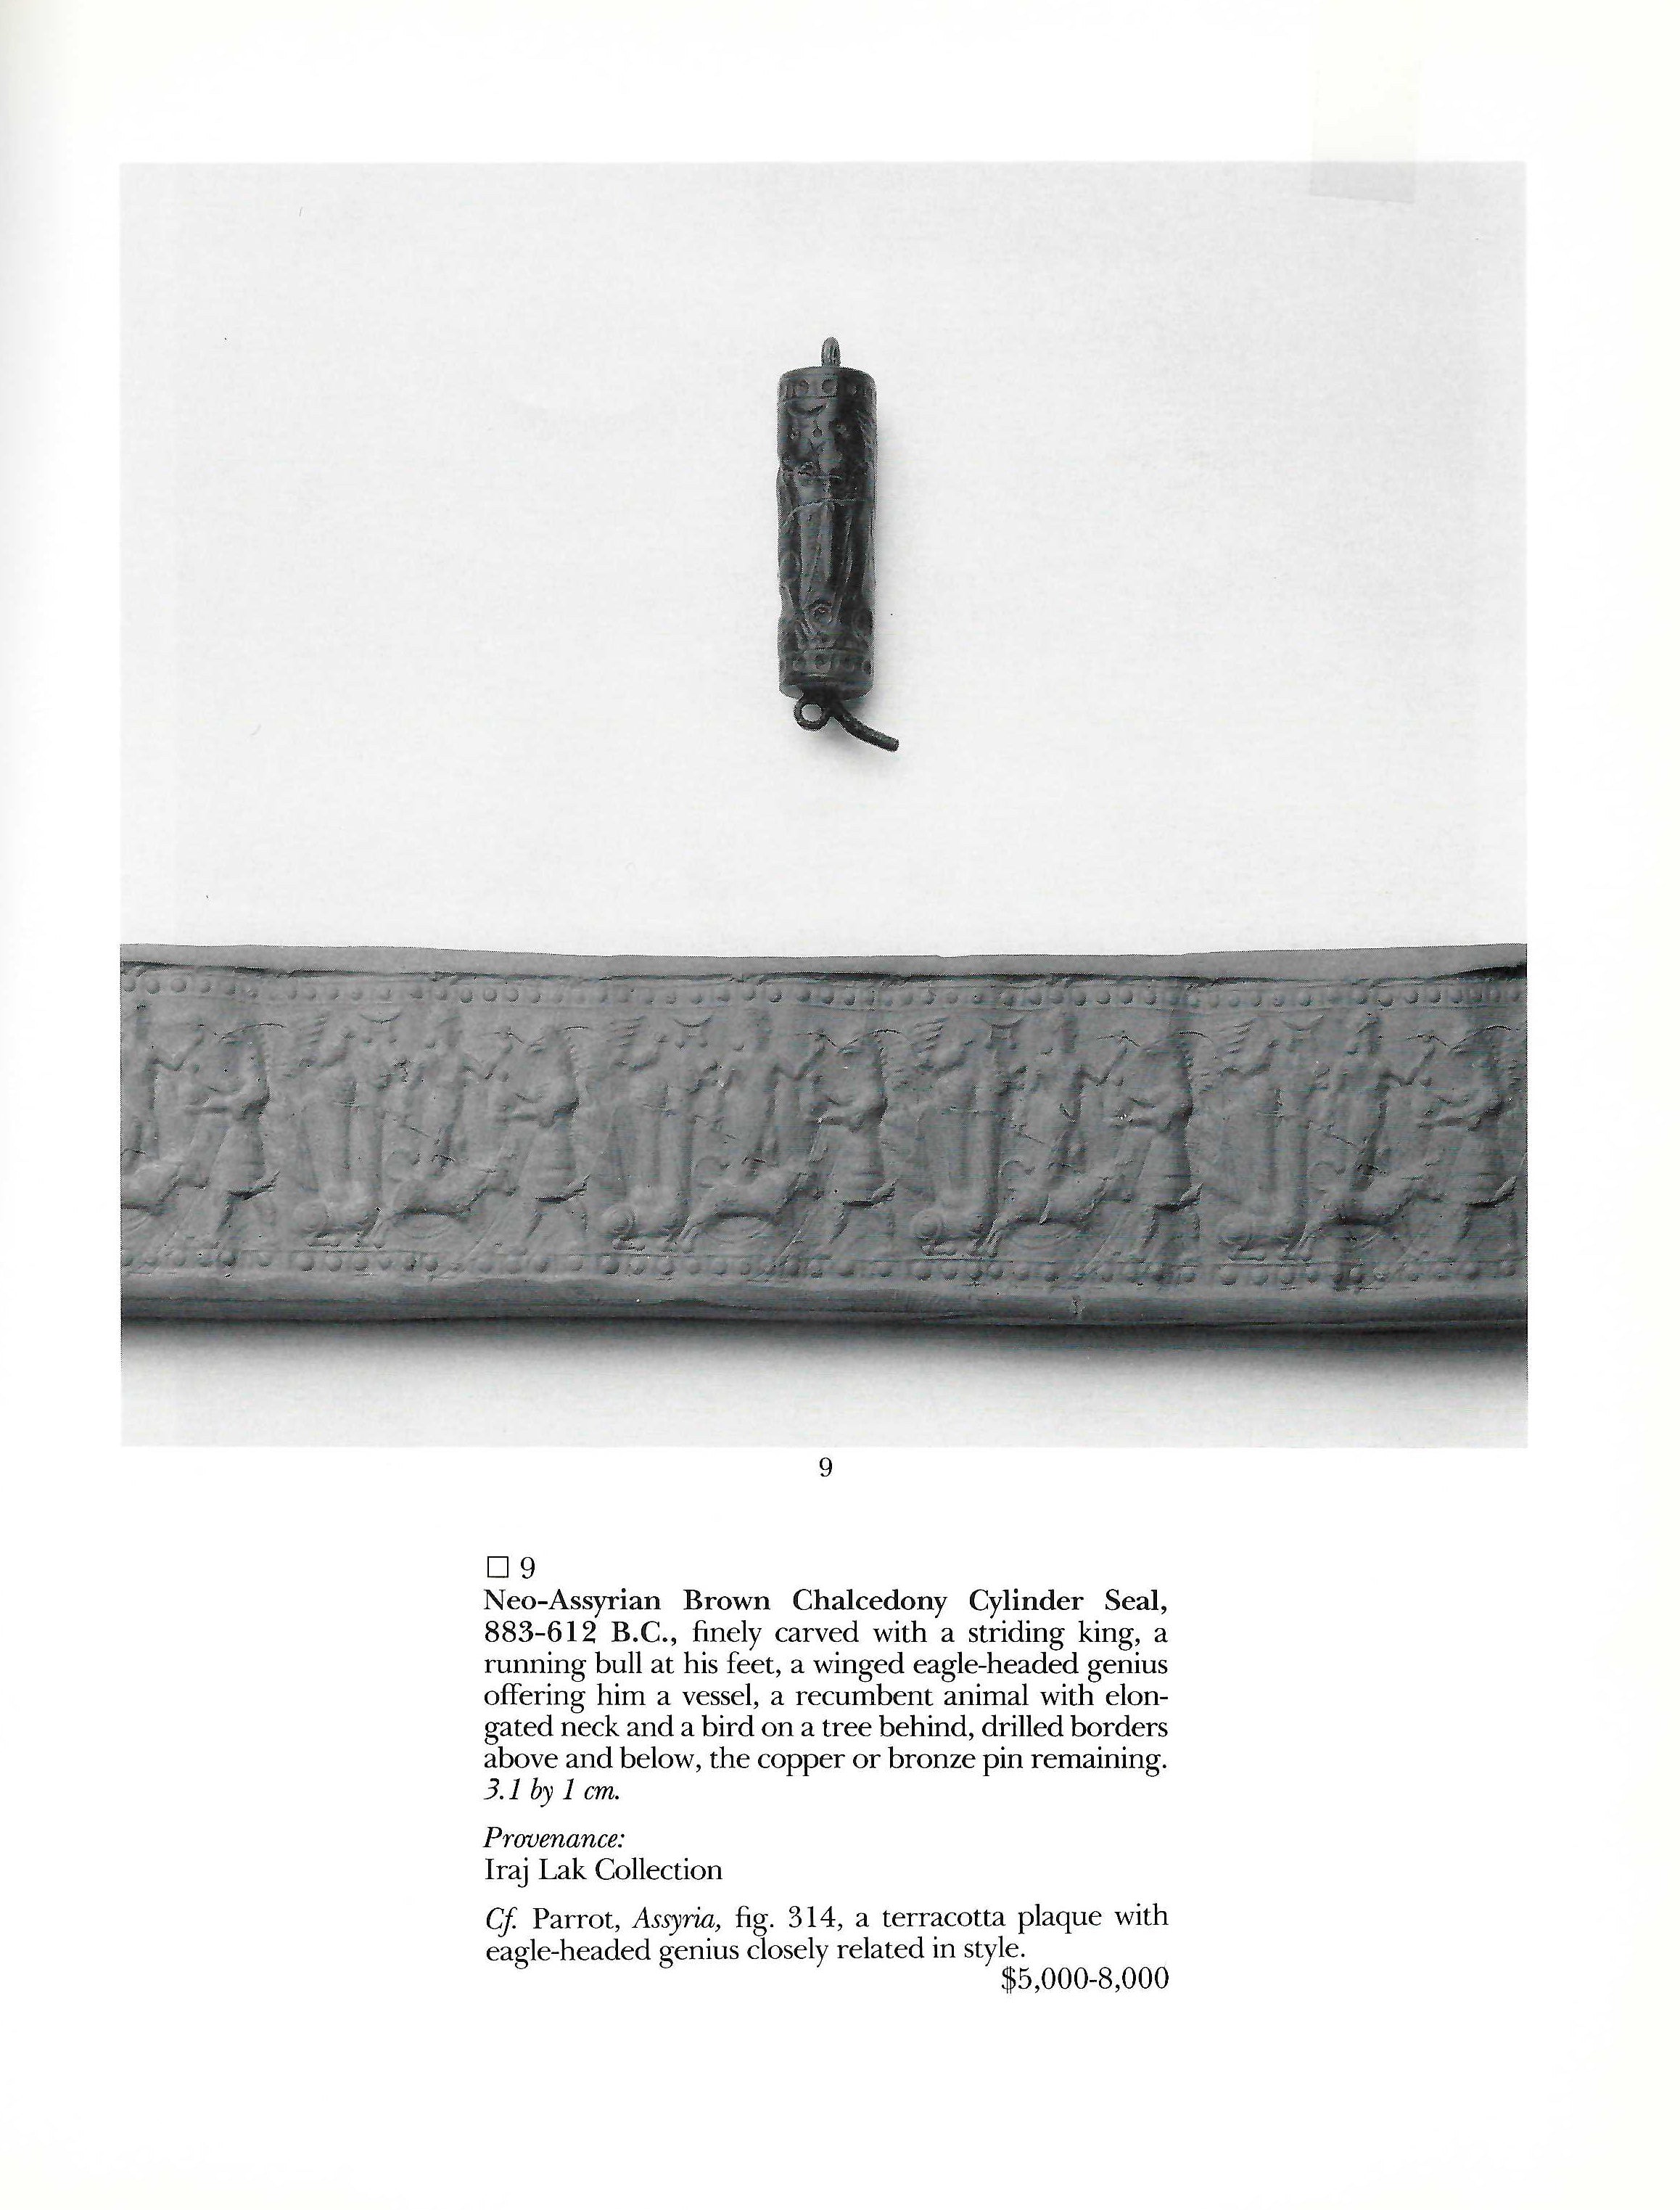 Ein neuassyrisches Zylindersiegel aus braunem Chalcedon, ca. 883 - 612 v. Chr